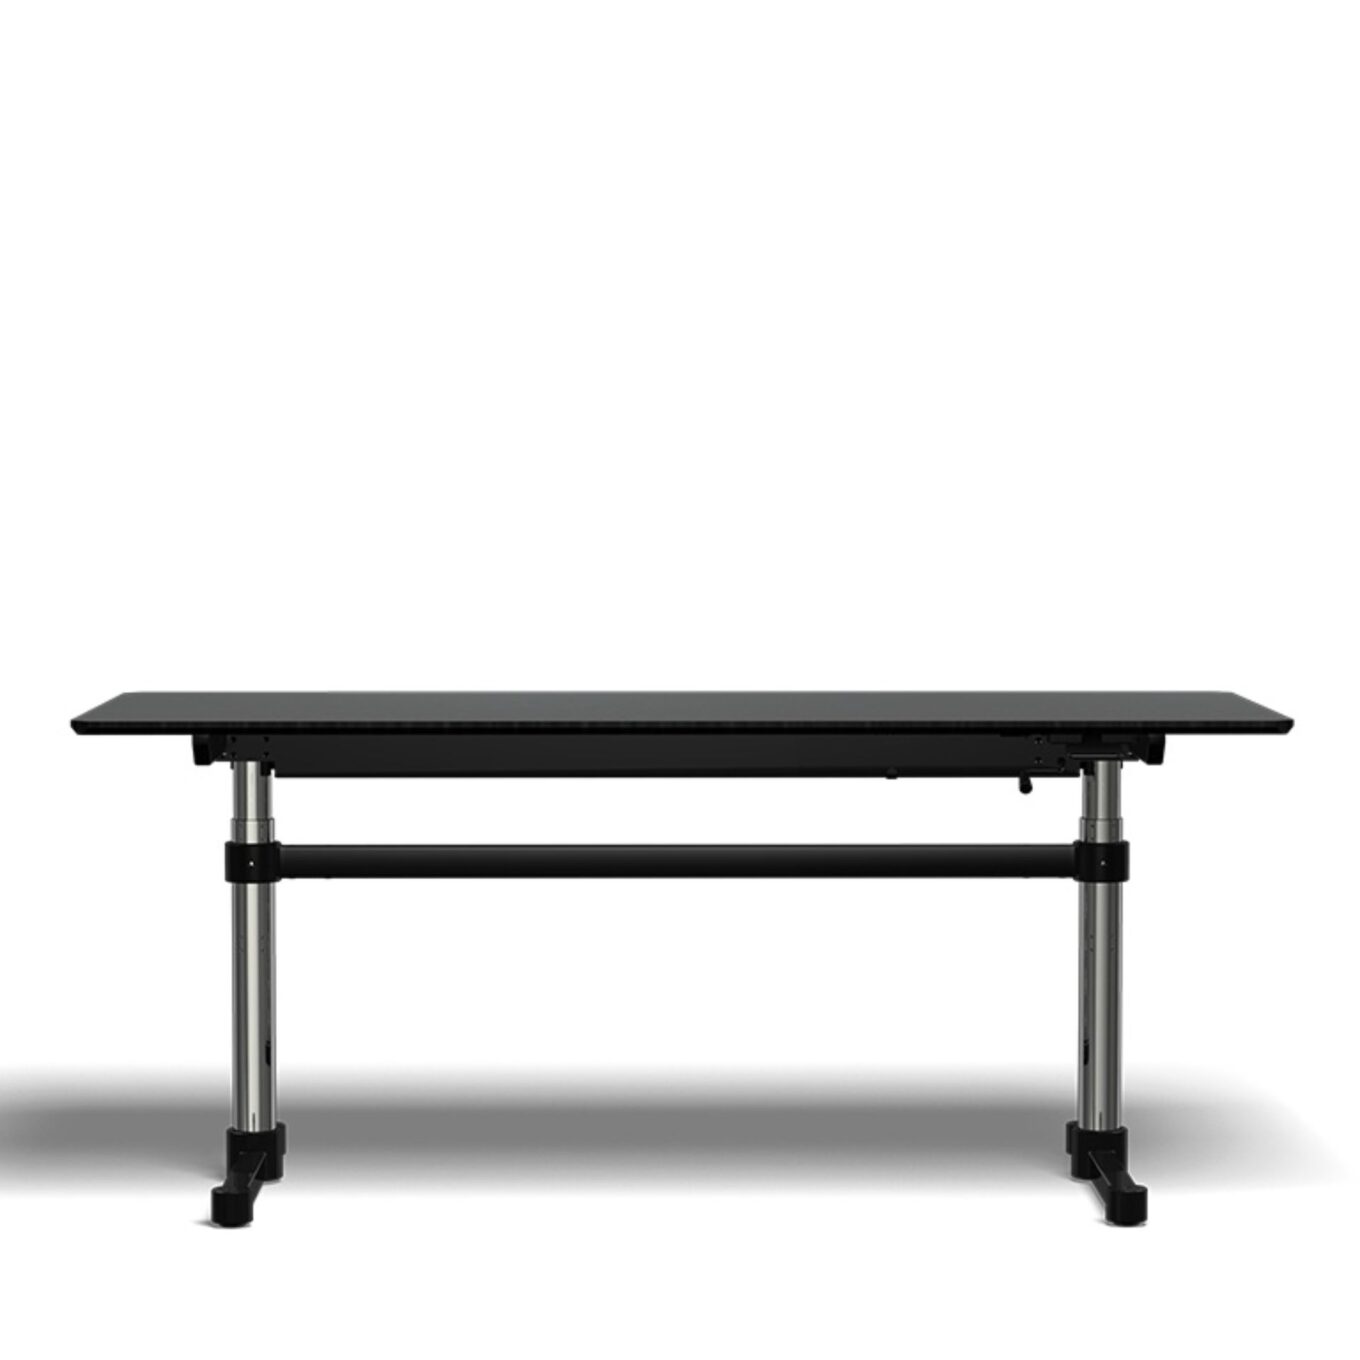 Table réglable USM Kitos M – Linoléum - Image #1